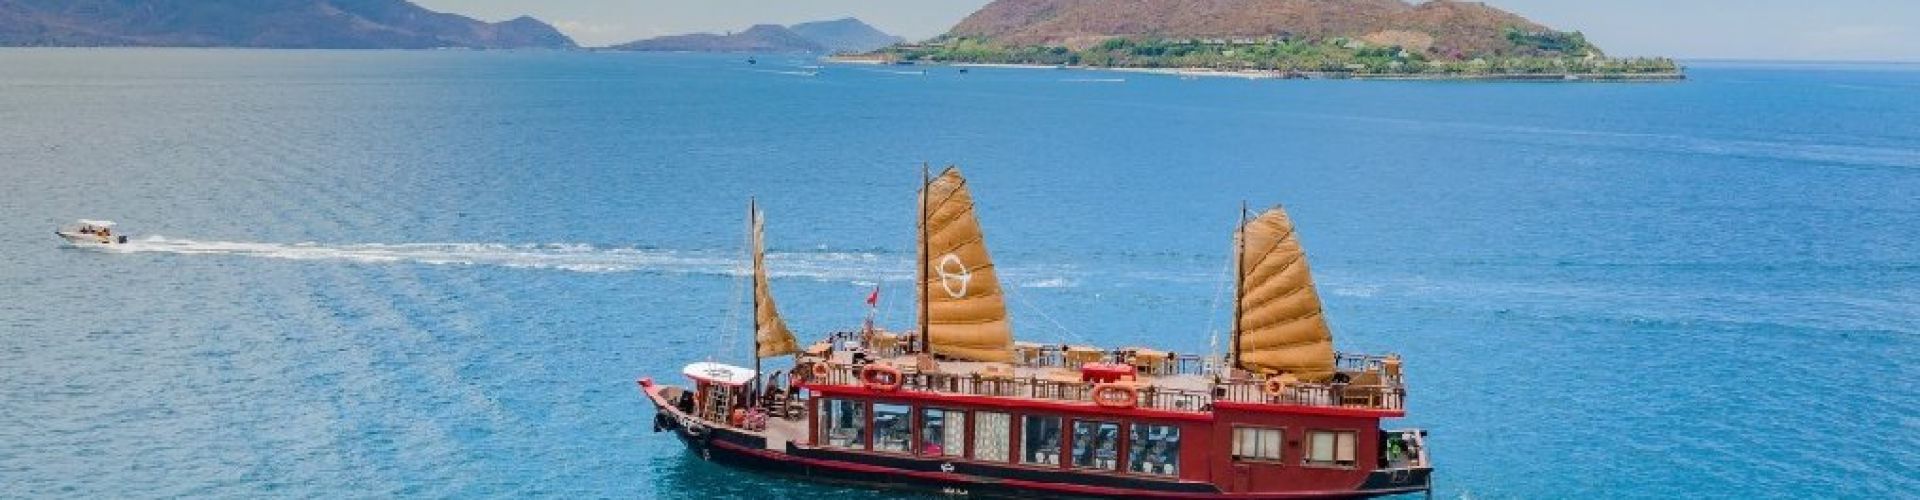 Nha Trang Bay Cruise